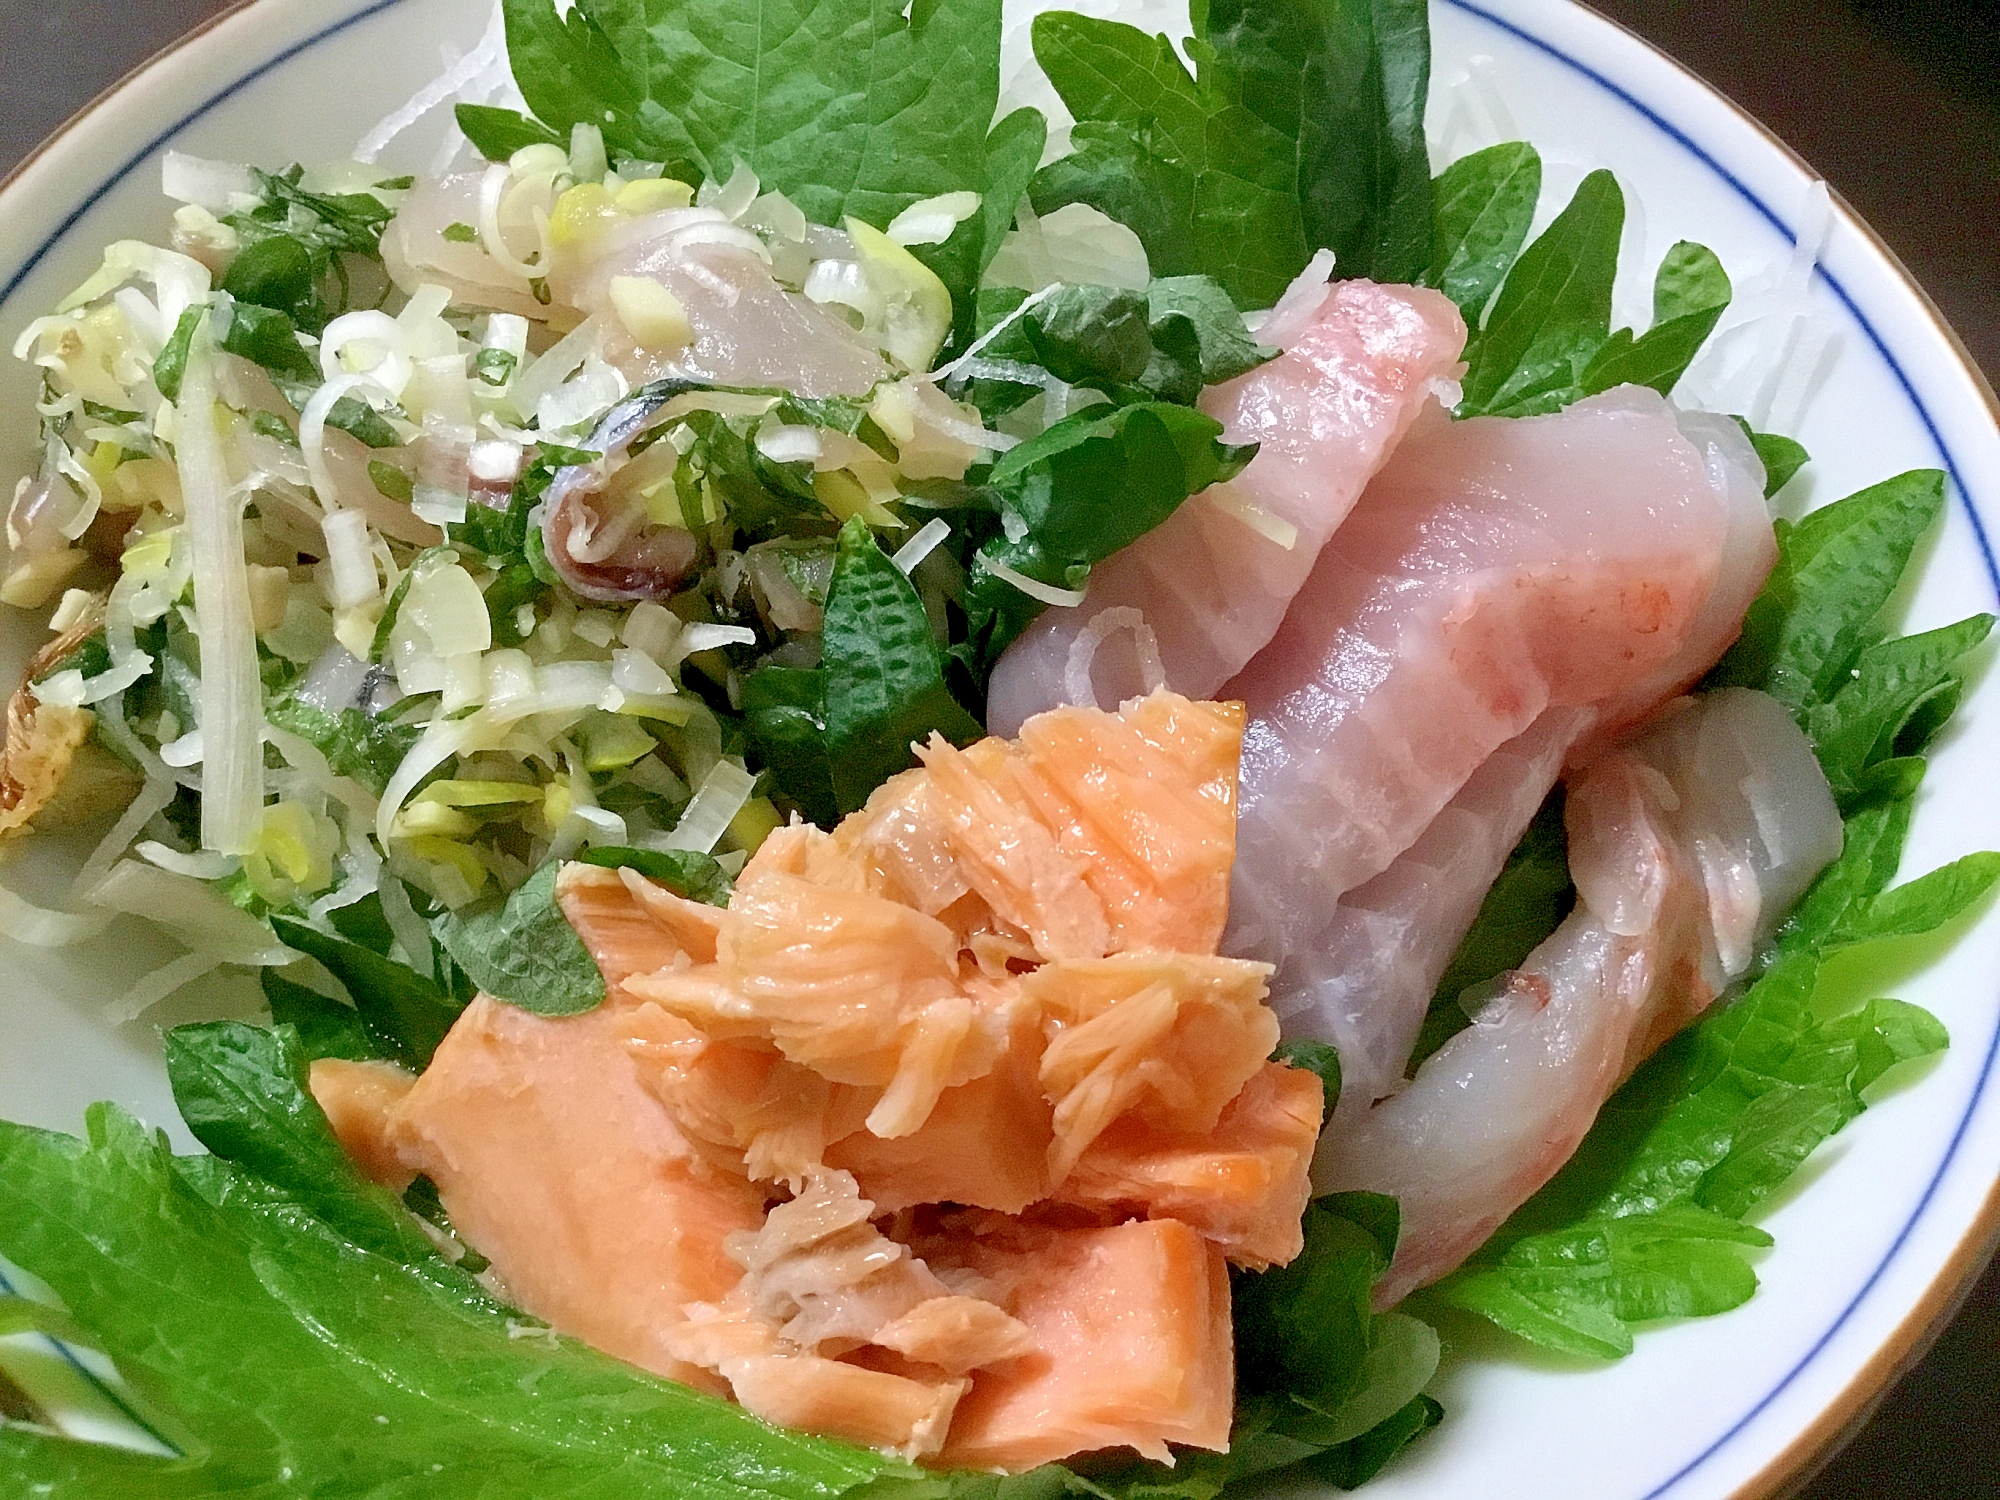 鯵鯛鮭のトリプル丼